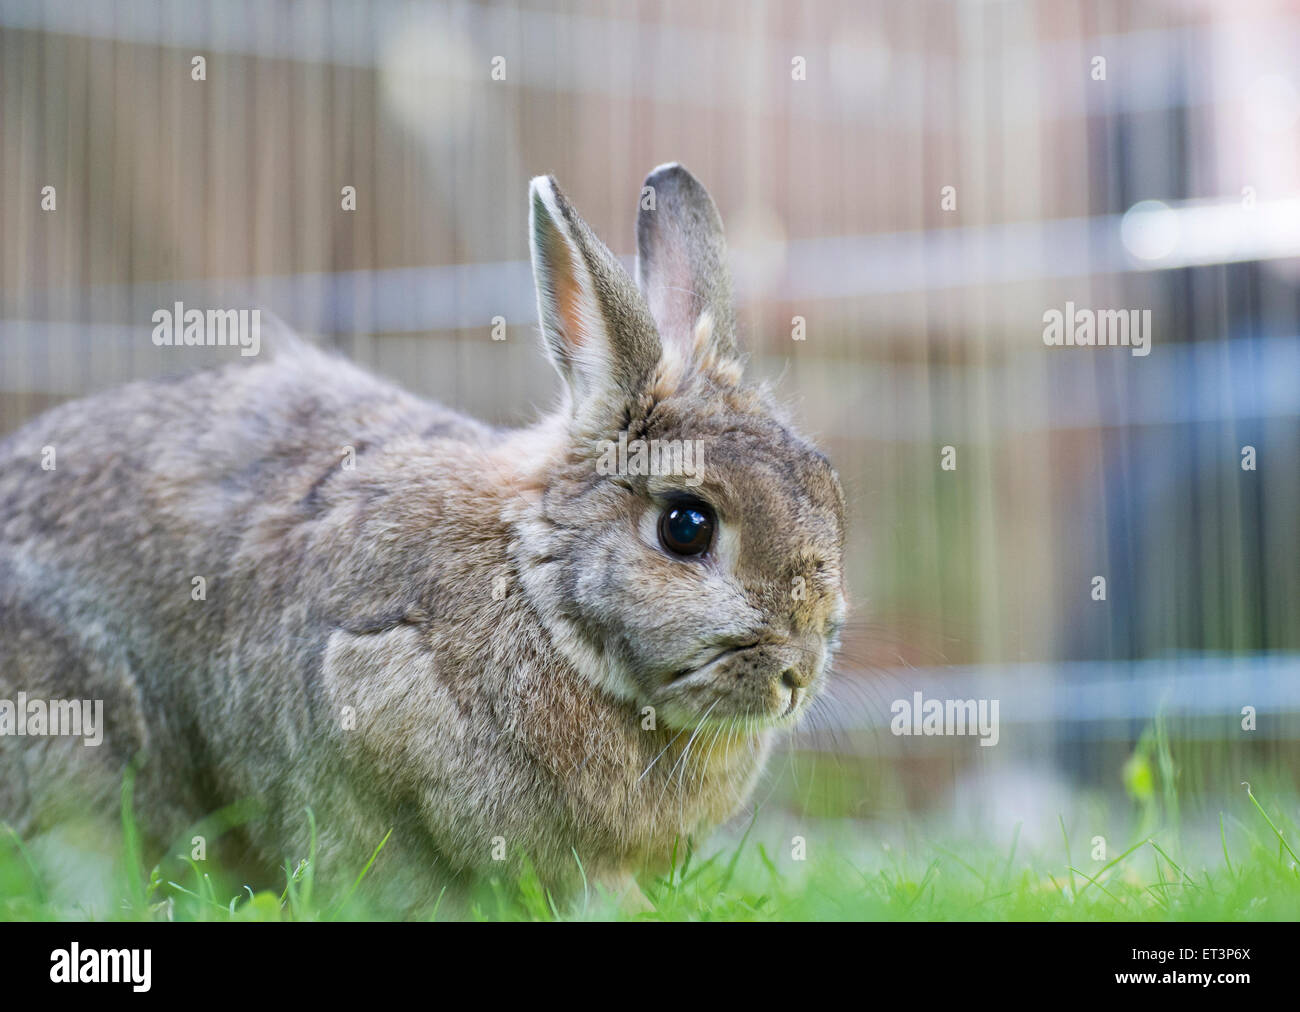 A rabbit in a garden. Stock Photo